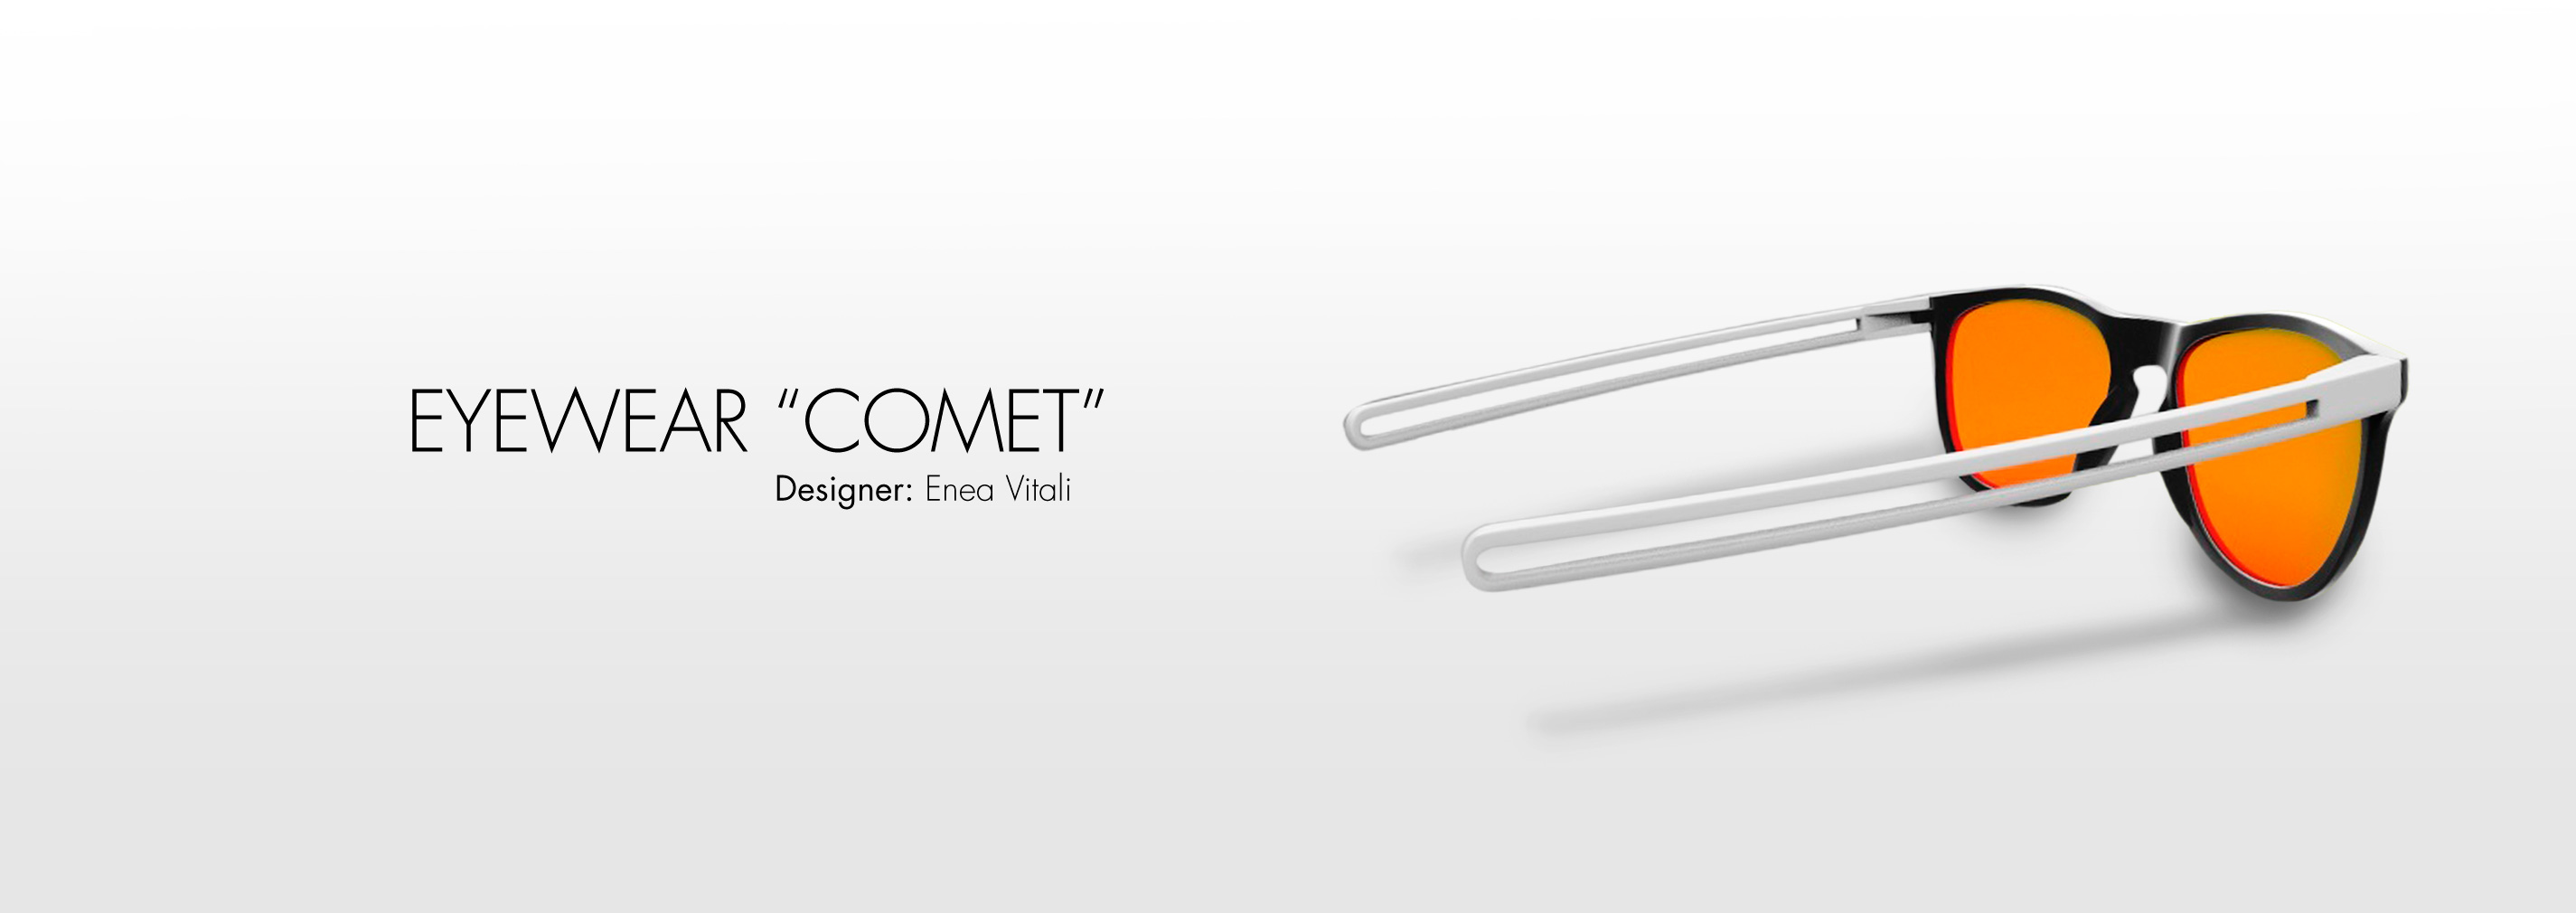 Comet-1